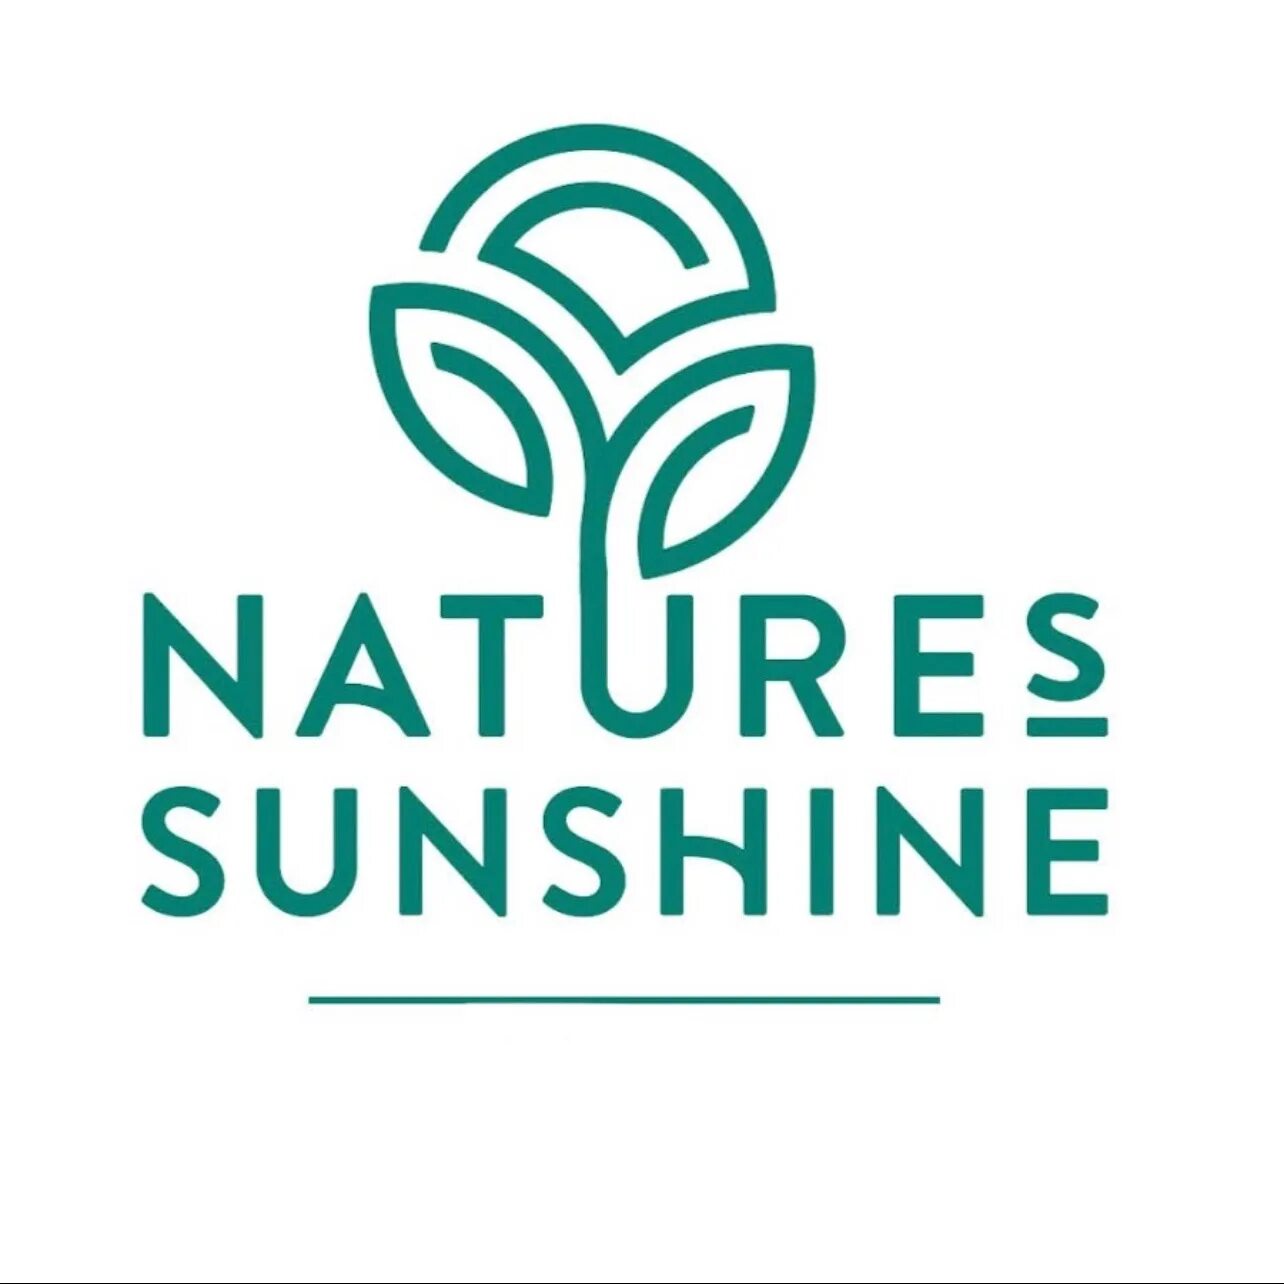 Логотип НСП новый. NSP логотип новый. NSP.natures Sunshine. Natures Sunshine логотип. Фирма natures